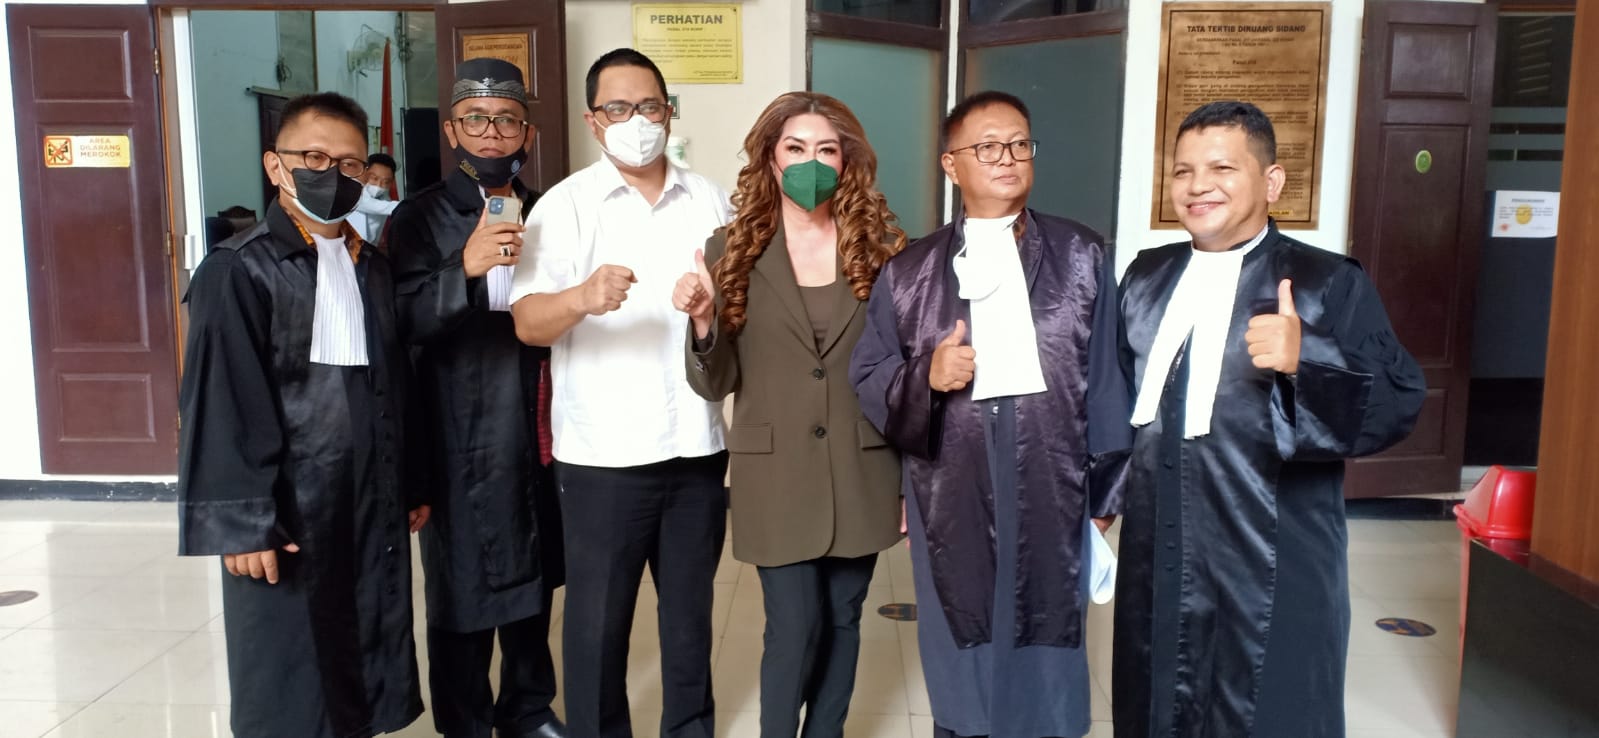 JPU Tuntut Bebas Titi Sumawijaya dan Jack Boyd Lapian dari Kasus Pencemaran Nama Baik Andrew Darwis